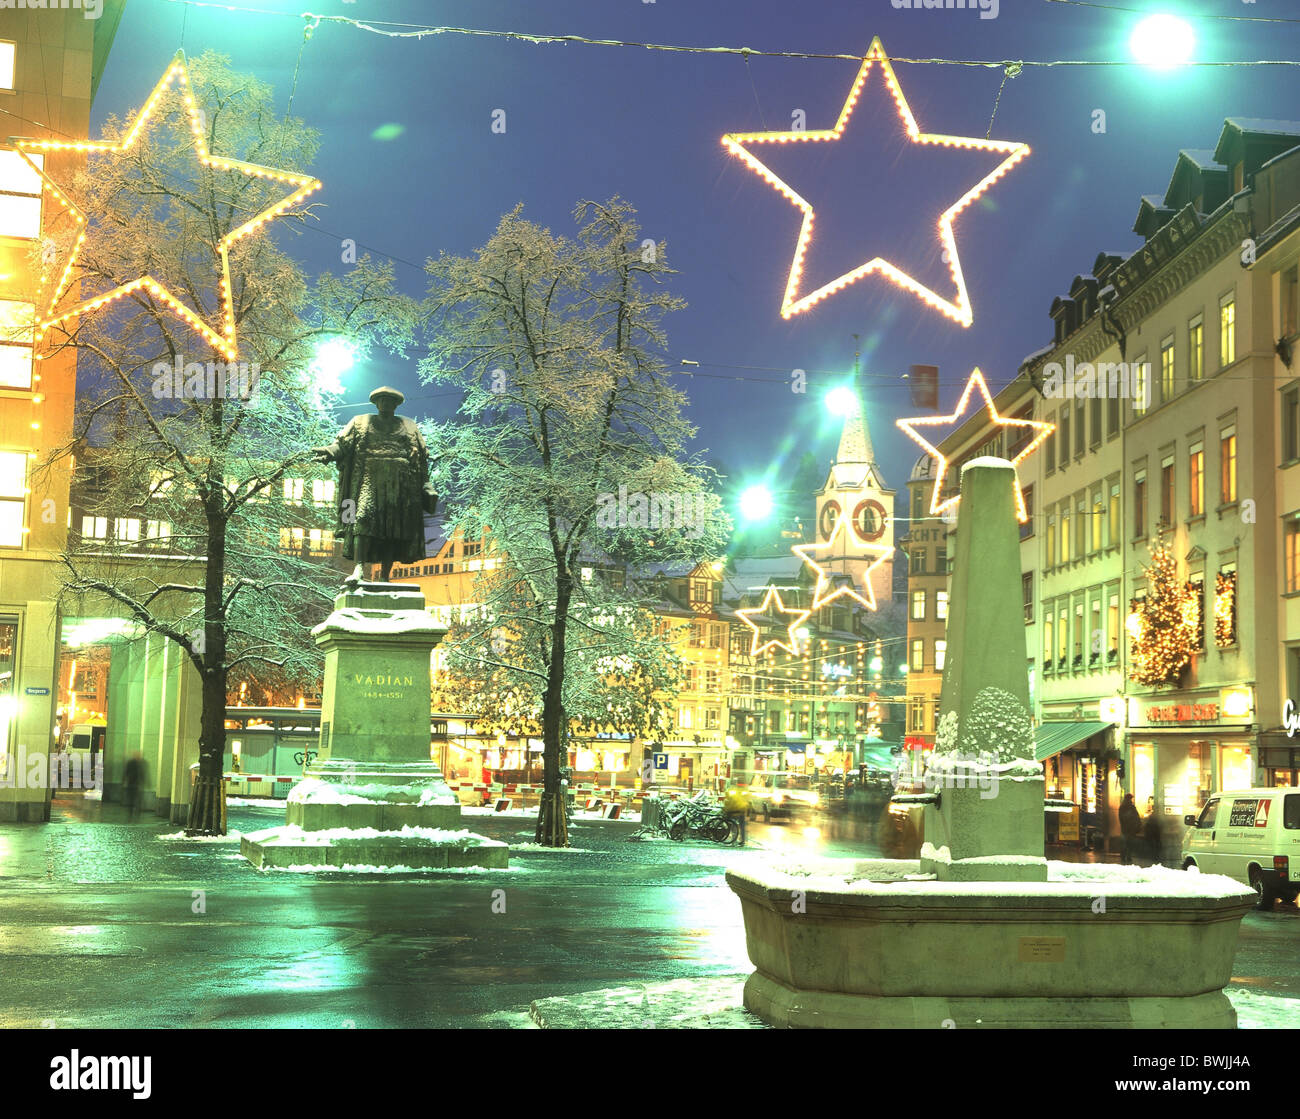 Stadt St. Gallen winter am Marktplatz Nacht Nacht Weihnachten Beleuchtung Schnee Dekoration alt sein, um Stockfoto